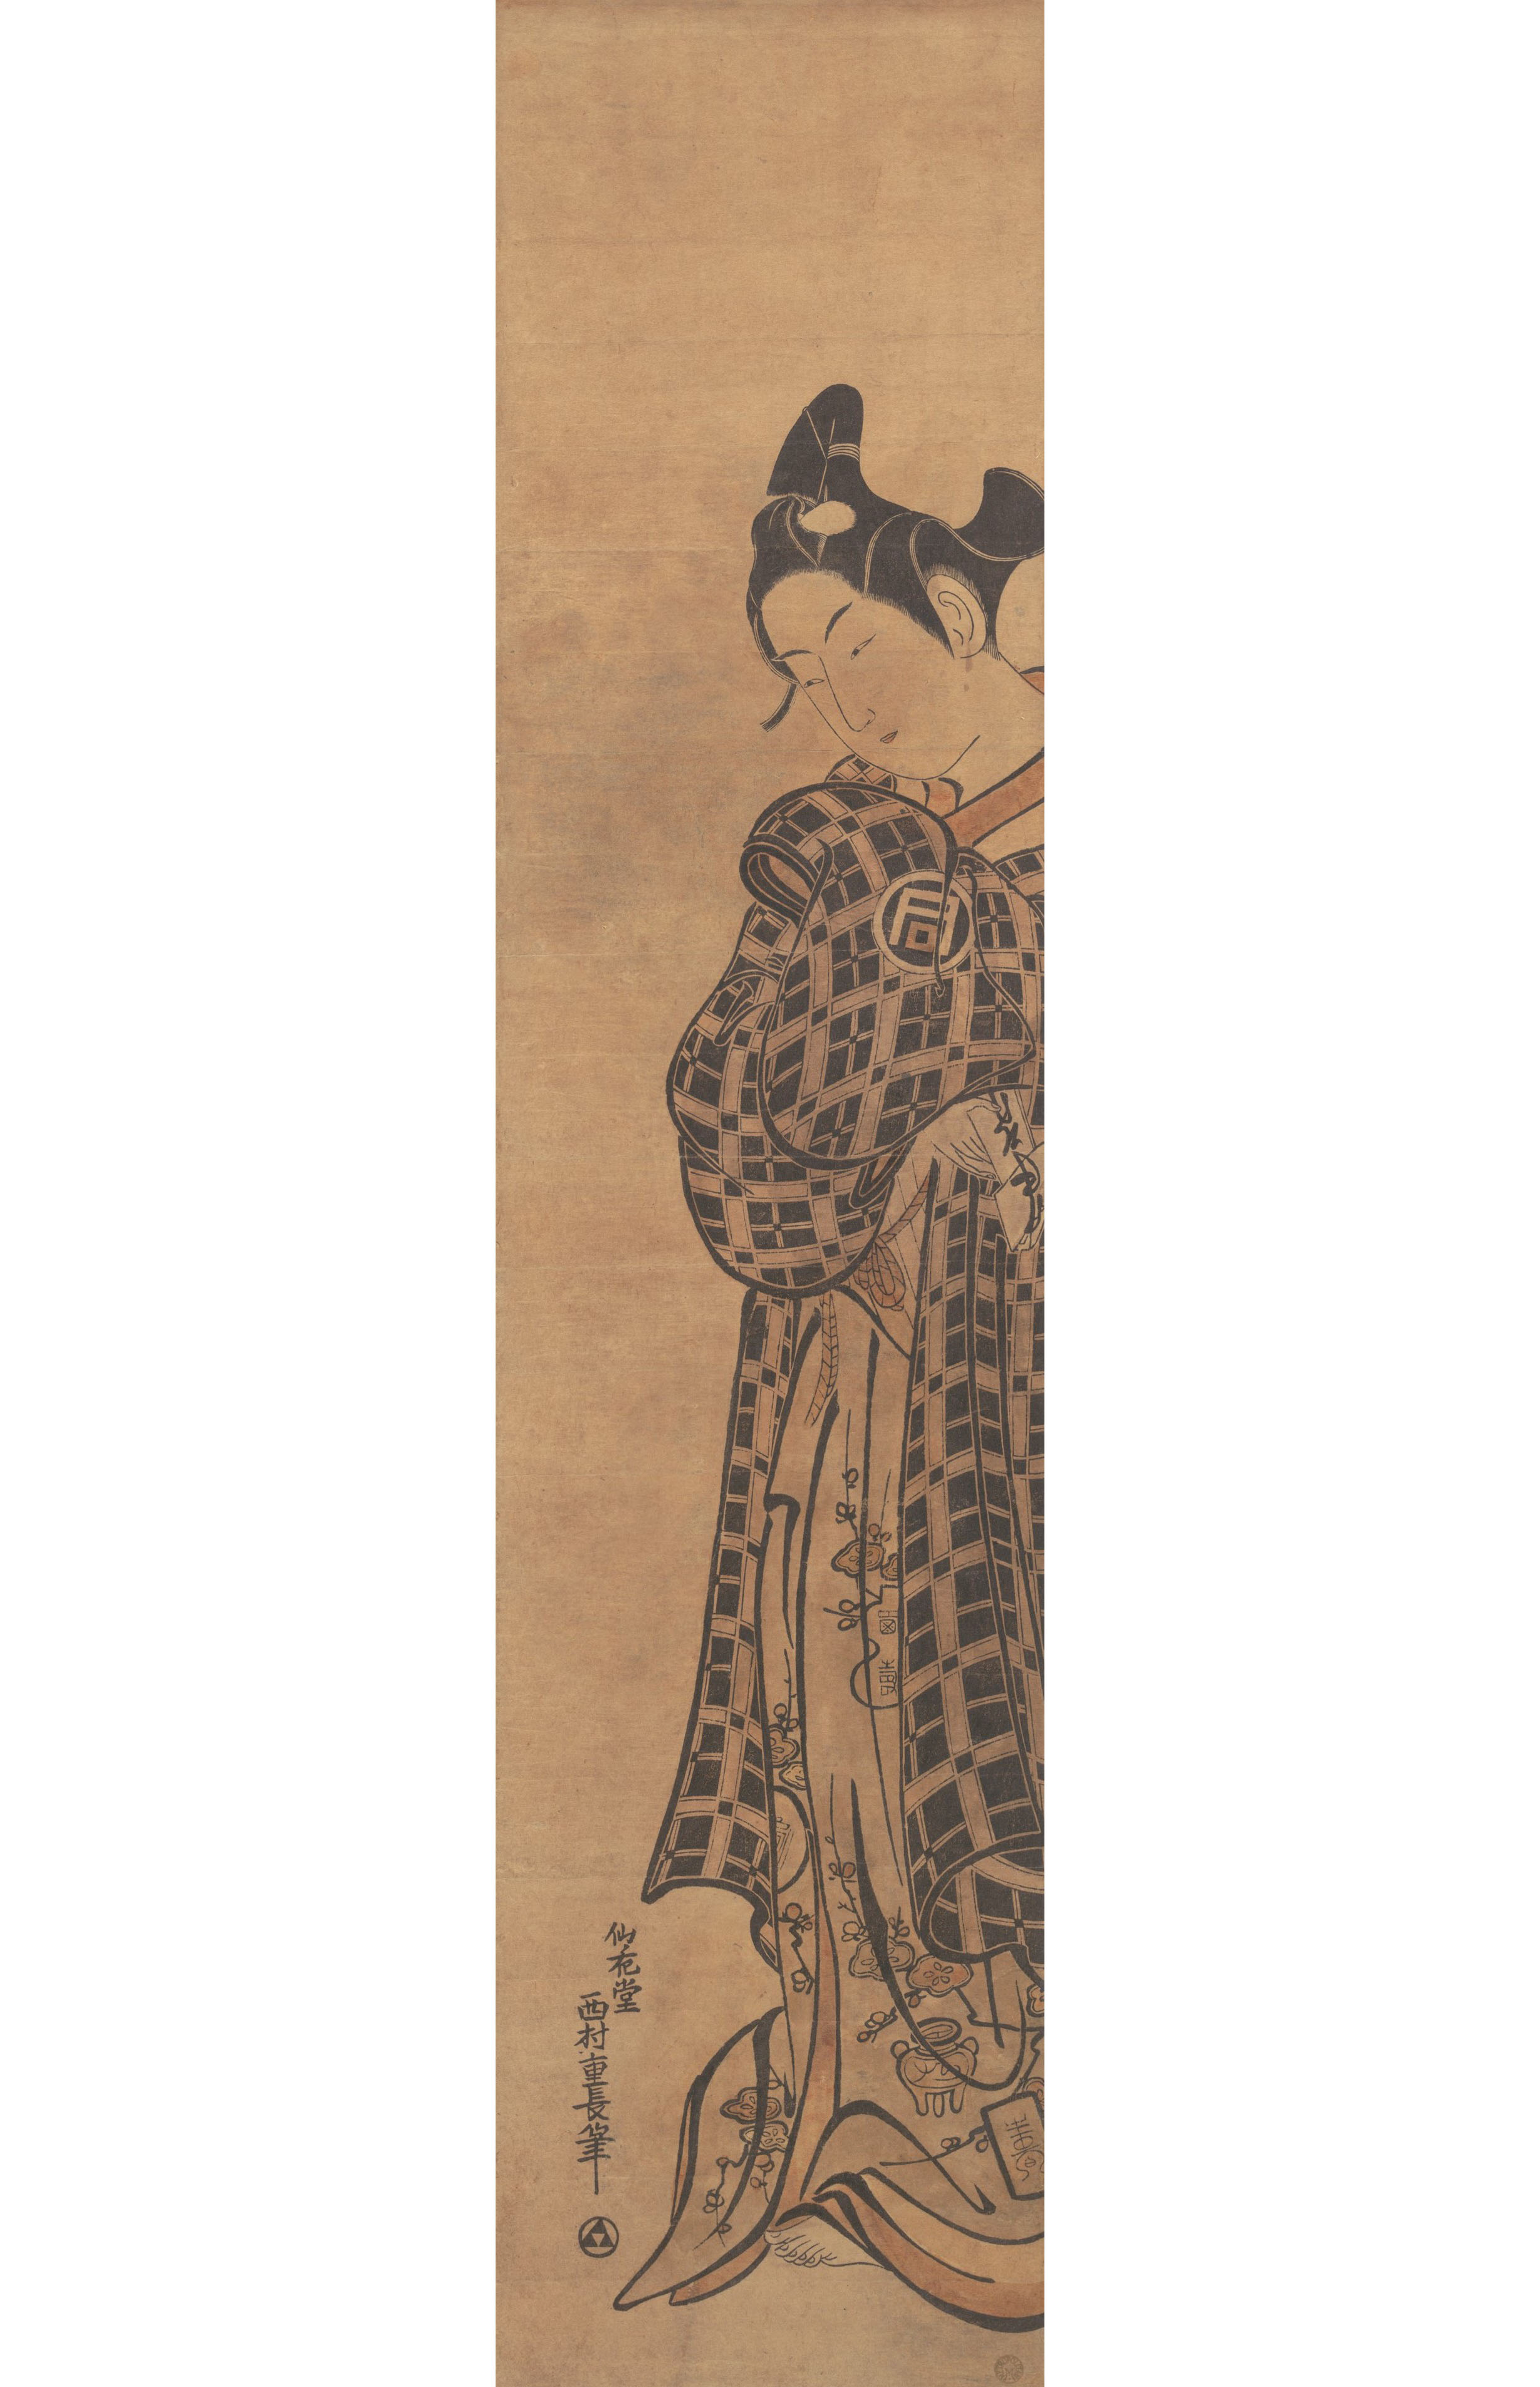 Нисимура Сигэнага. "Актер саногава Итимтсу в образе молодого человека, держащего сложенное письмо". Около 1765.